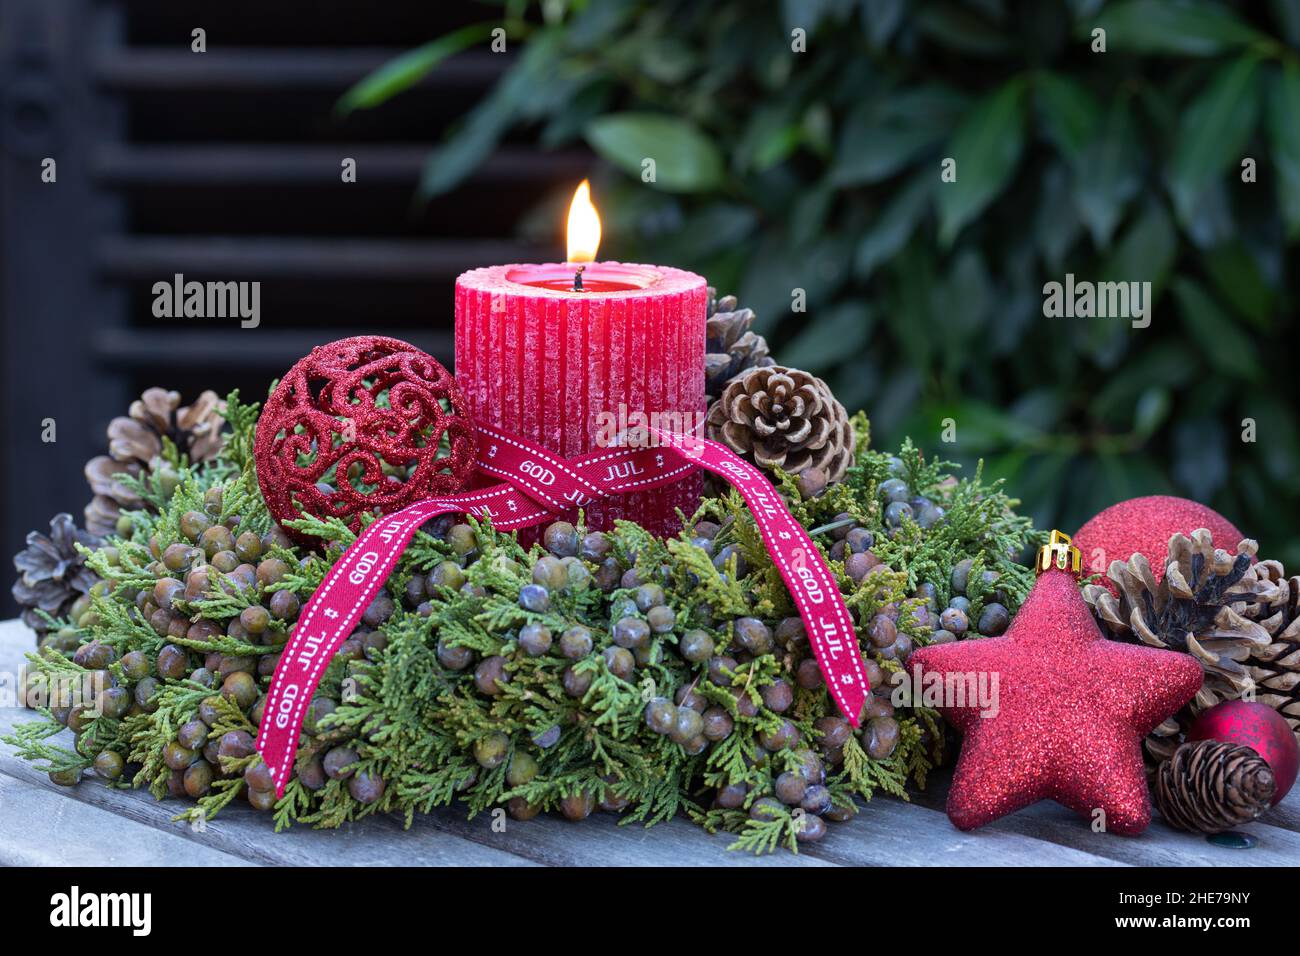 decoración navideña con vela roja y corona de bayas de enebro Foto de stock